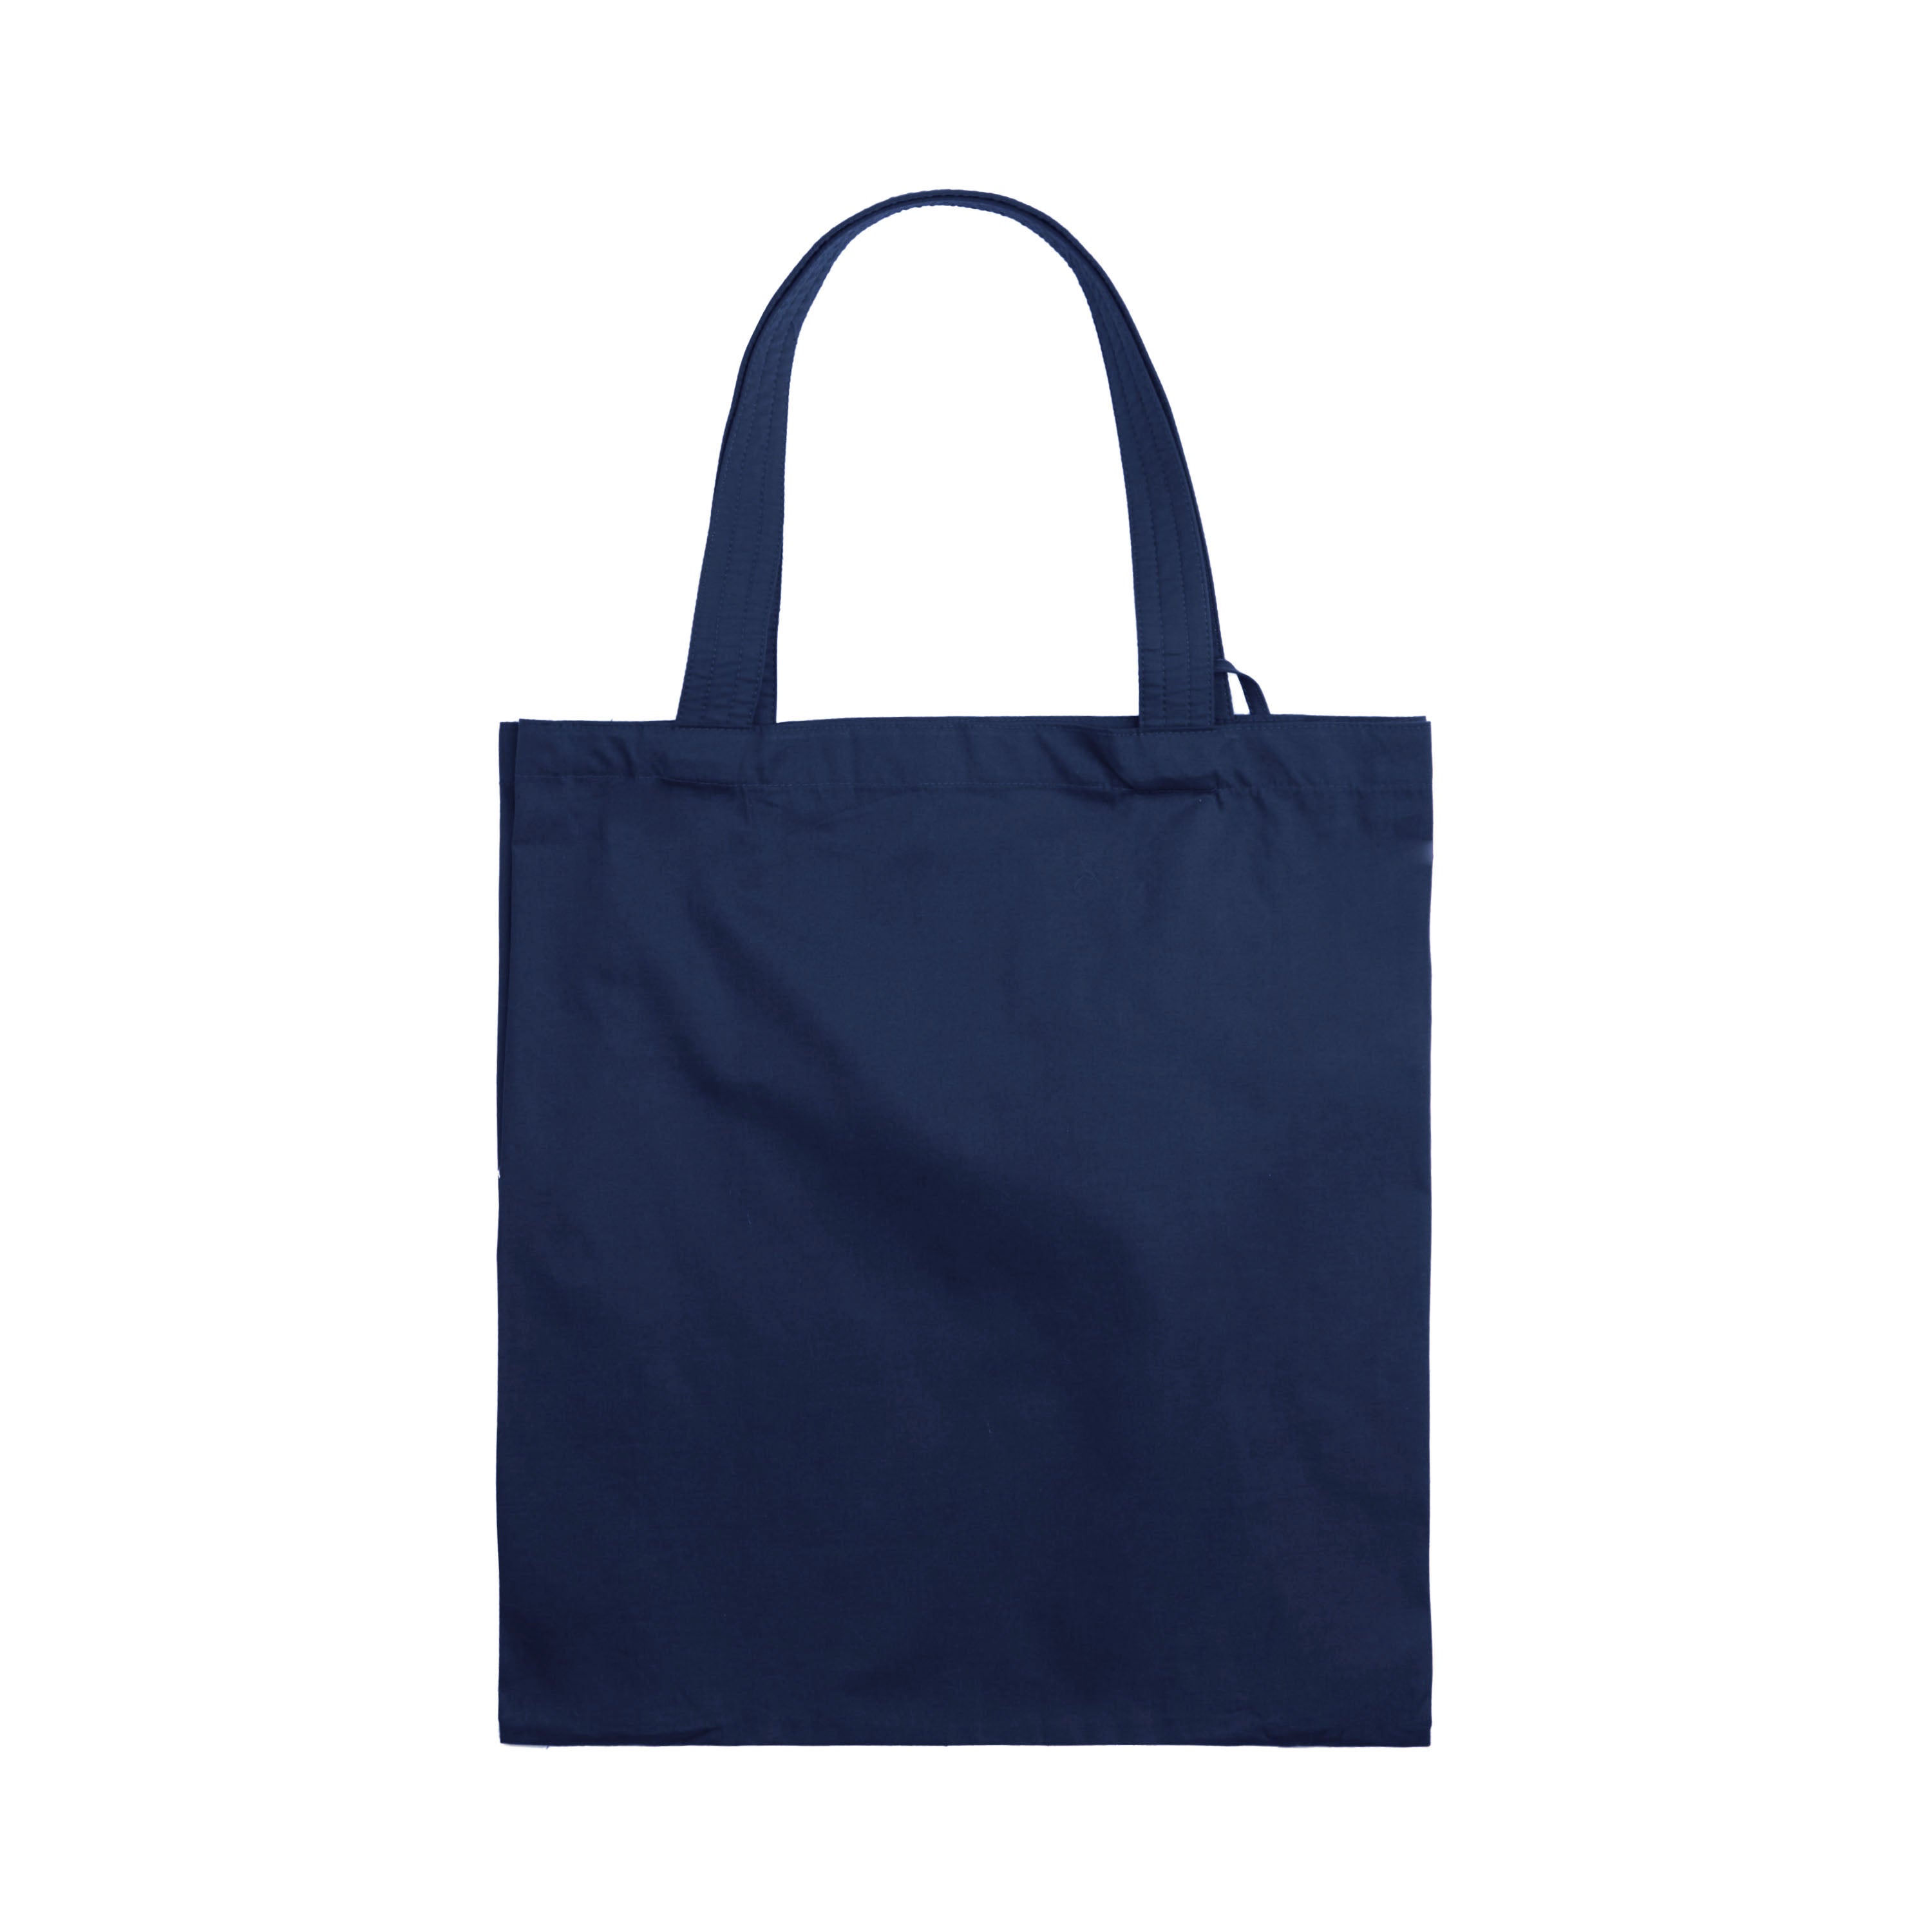 NaRaYa Be Simple Foldable Shopping Bag - NaRaYa